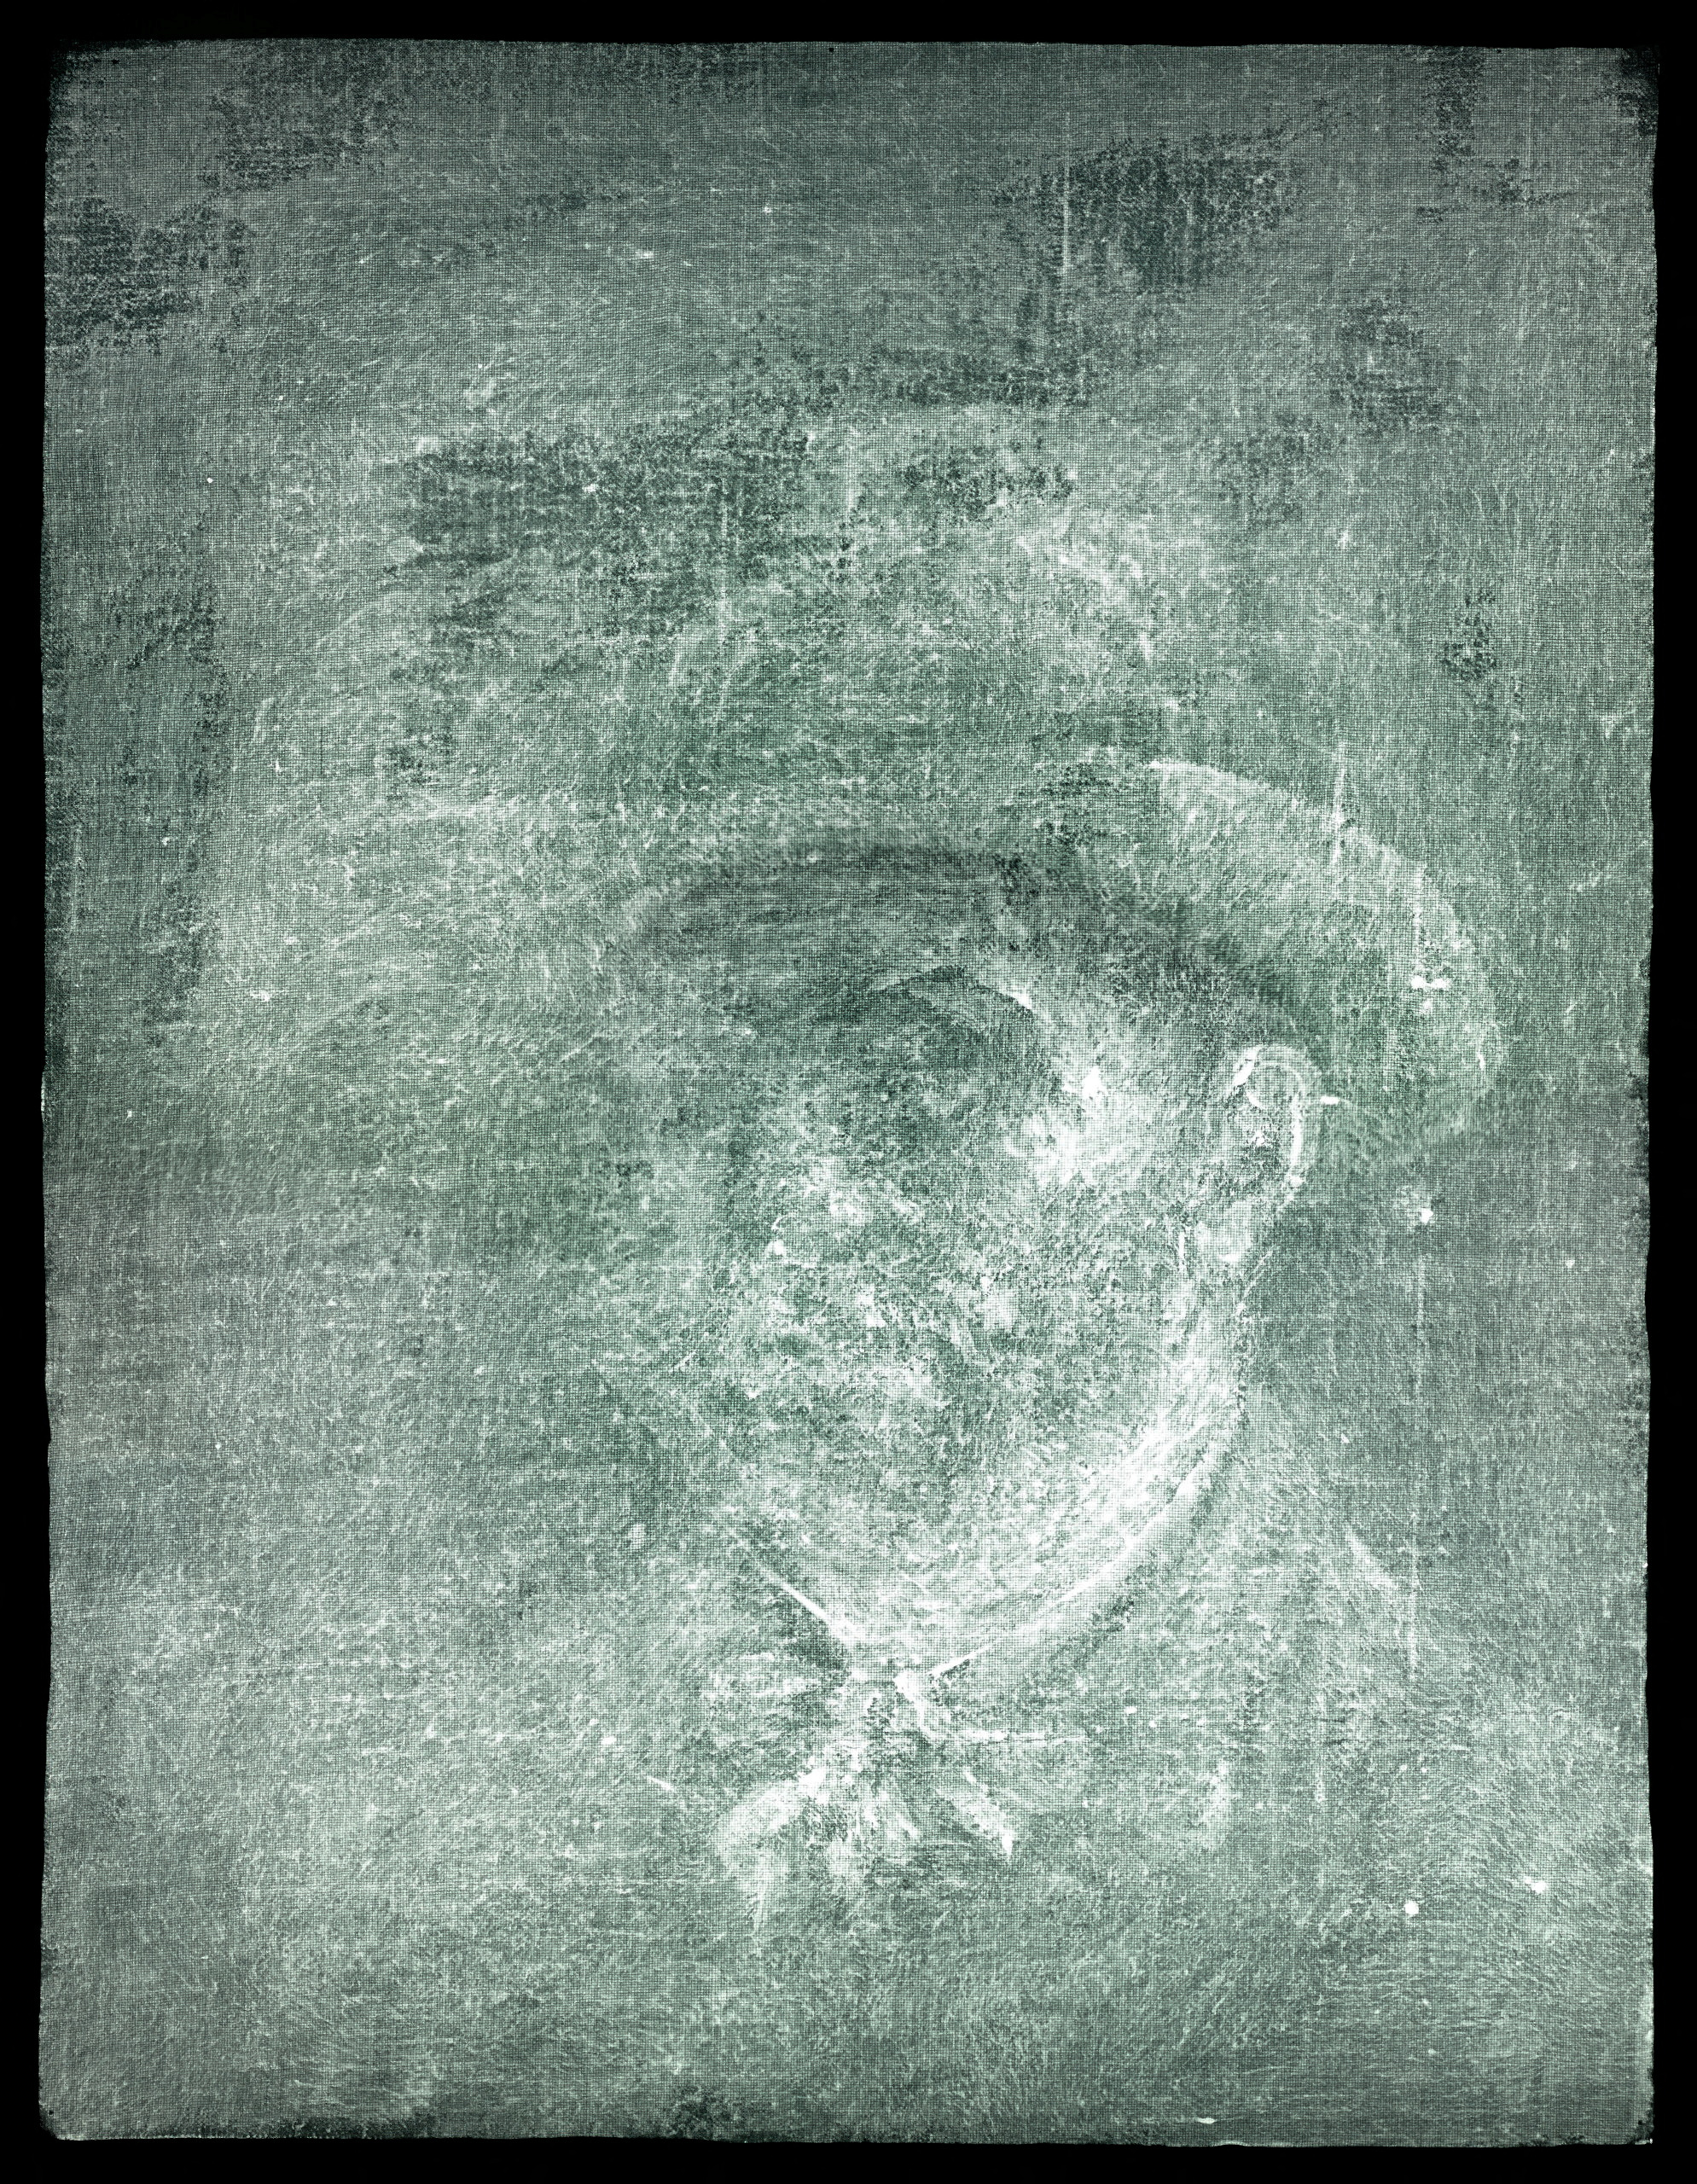 Imagen de rayos X del autorretrato de Vincent Van Gogh escondido debajo de pegamento y cartón, en Edimburgo, Escocia